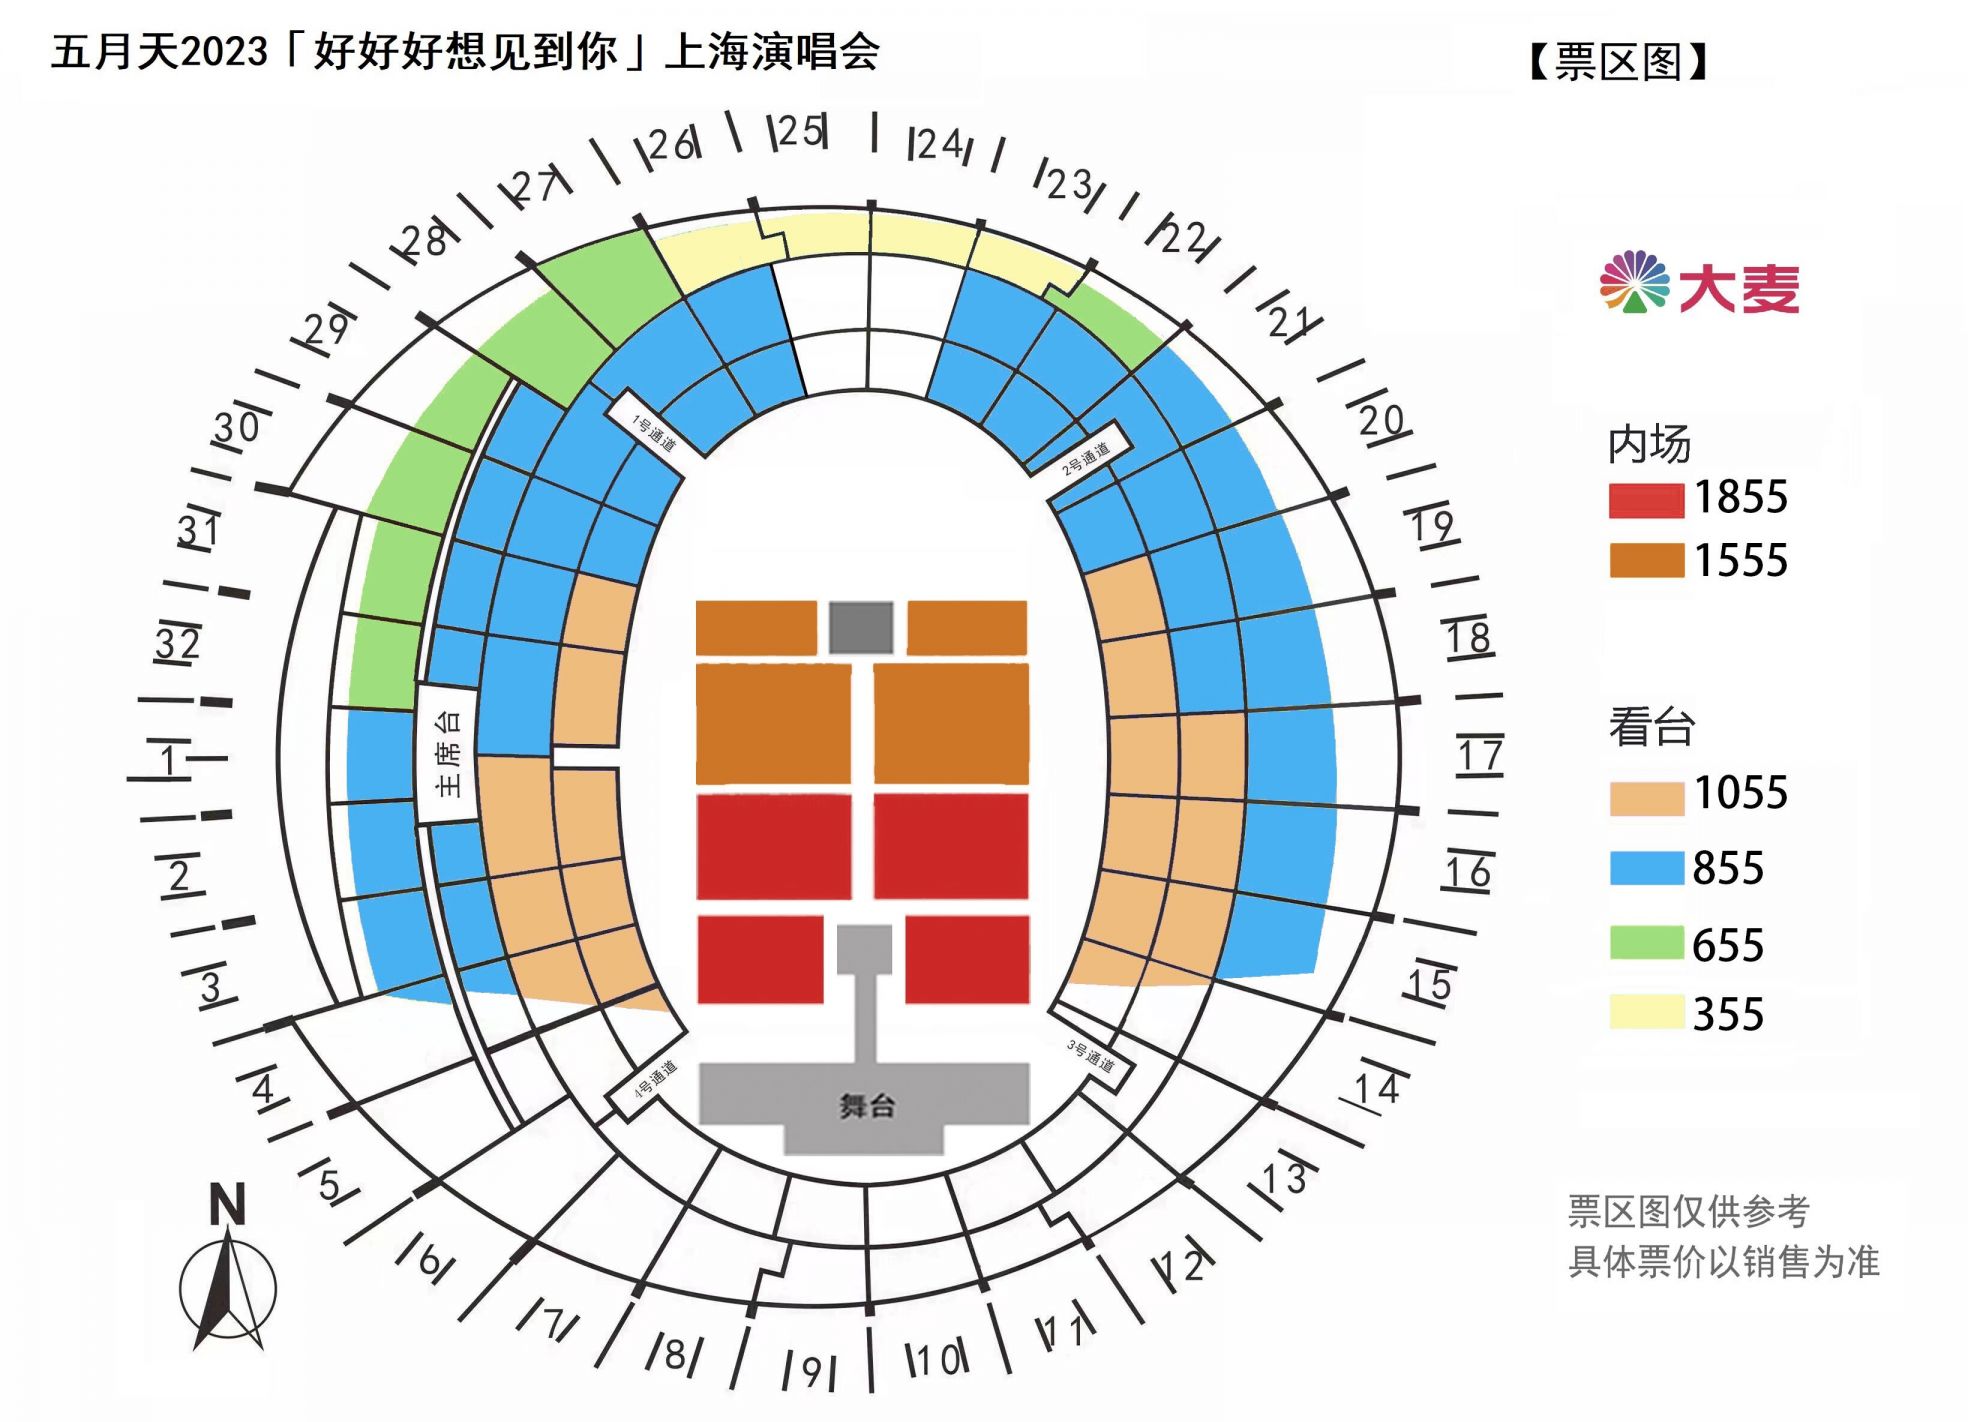 2023五月天上海演唱会座位图(上海体育场) 2023五月天上海演唱会座位